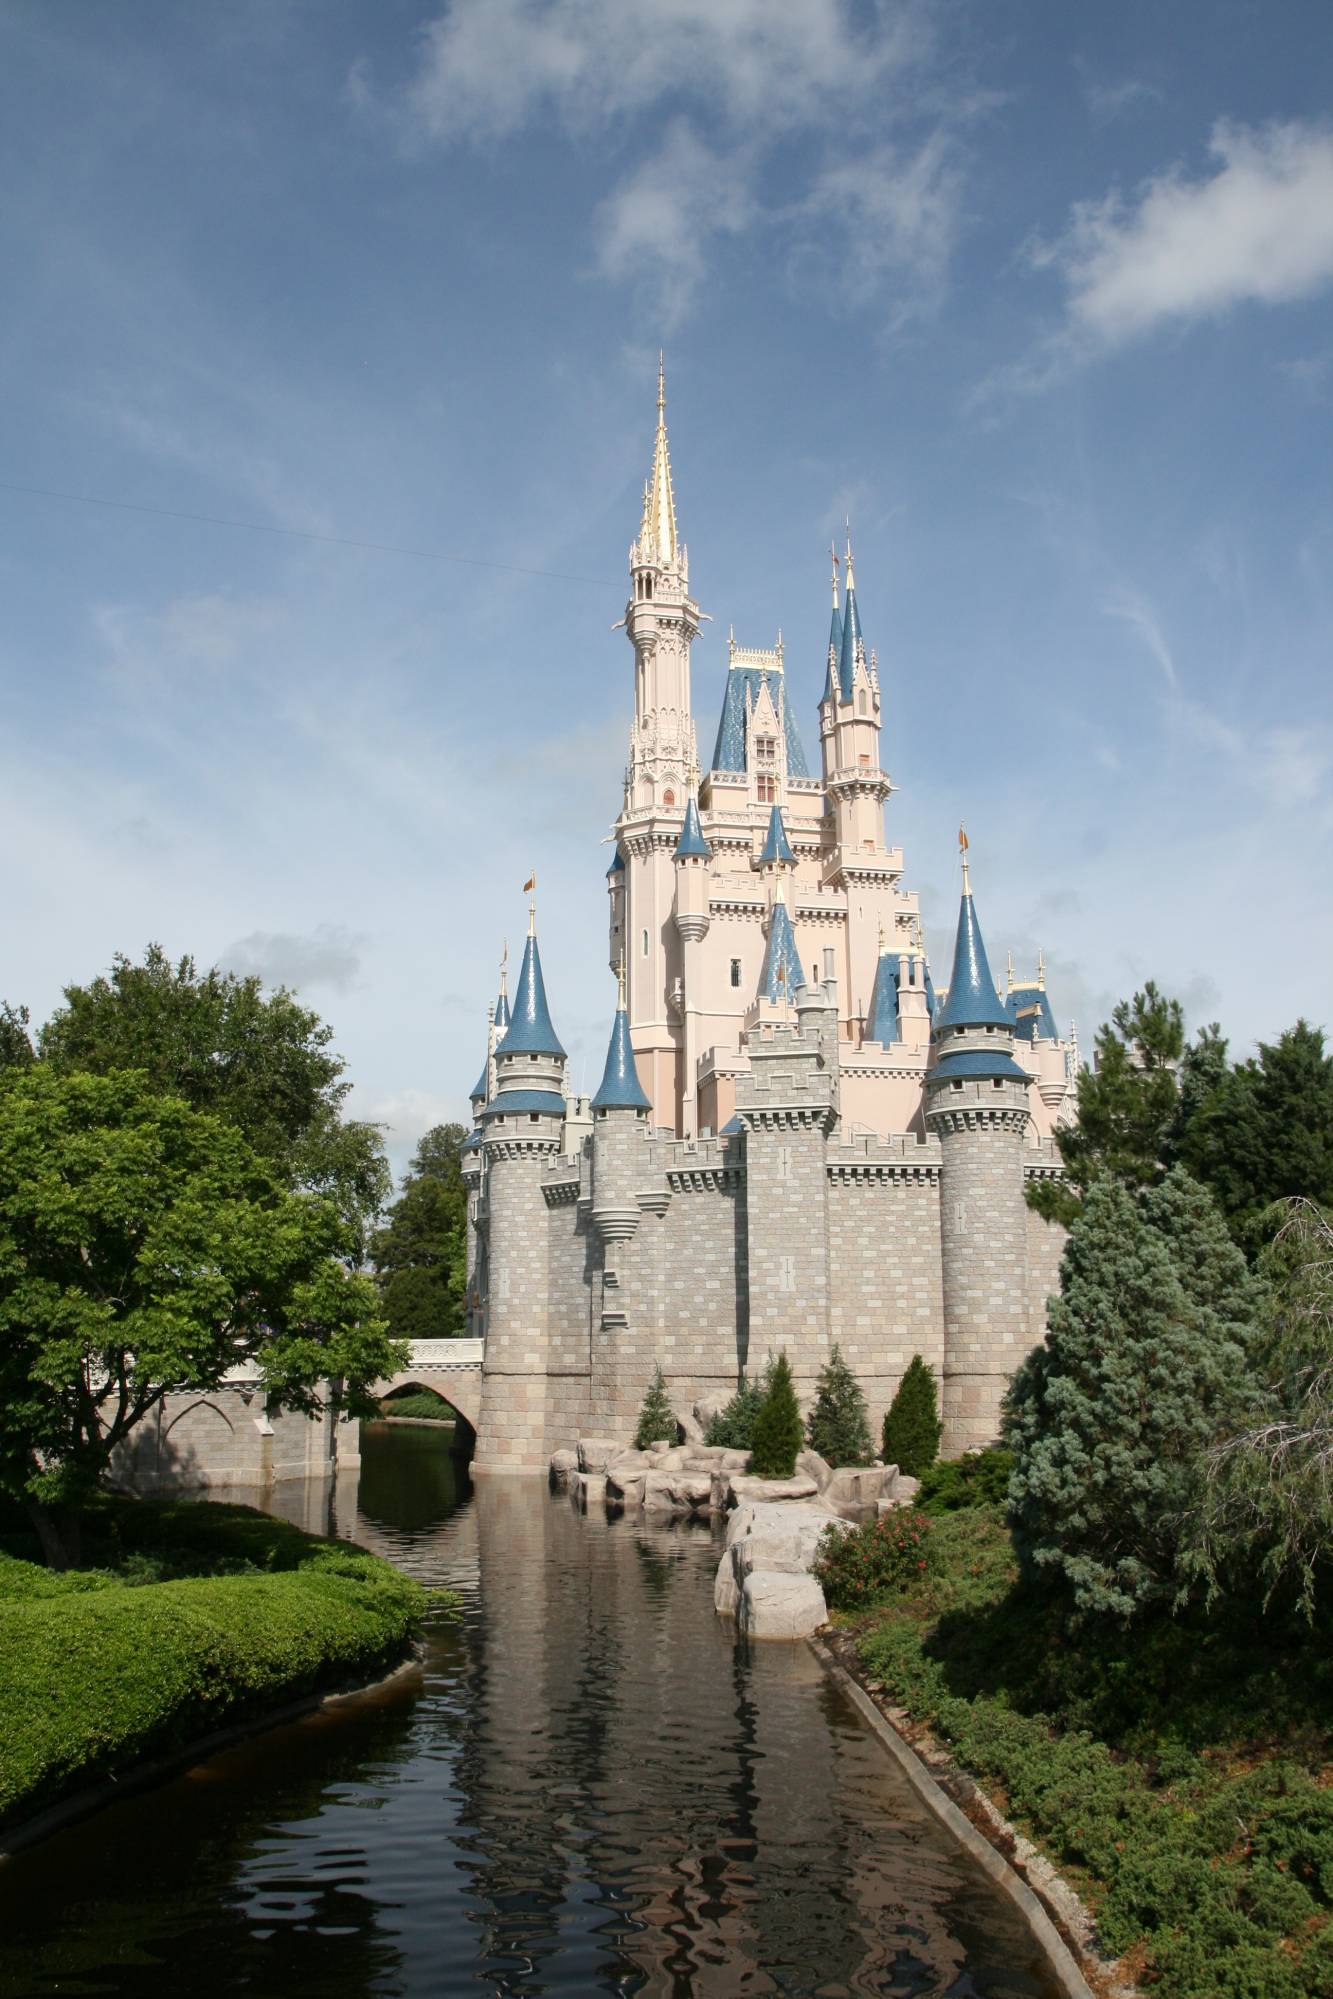 Already a Disneyland expert? Get help planning a trip to Walt Disney World! | PassPorter.com